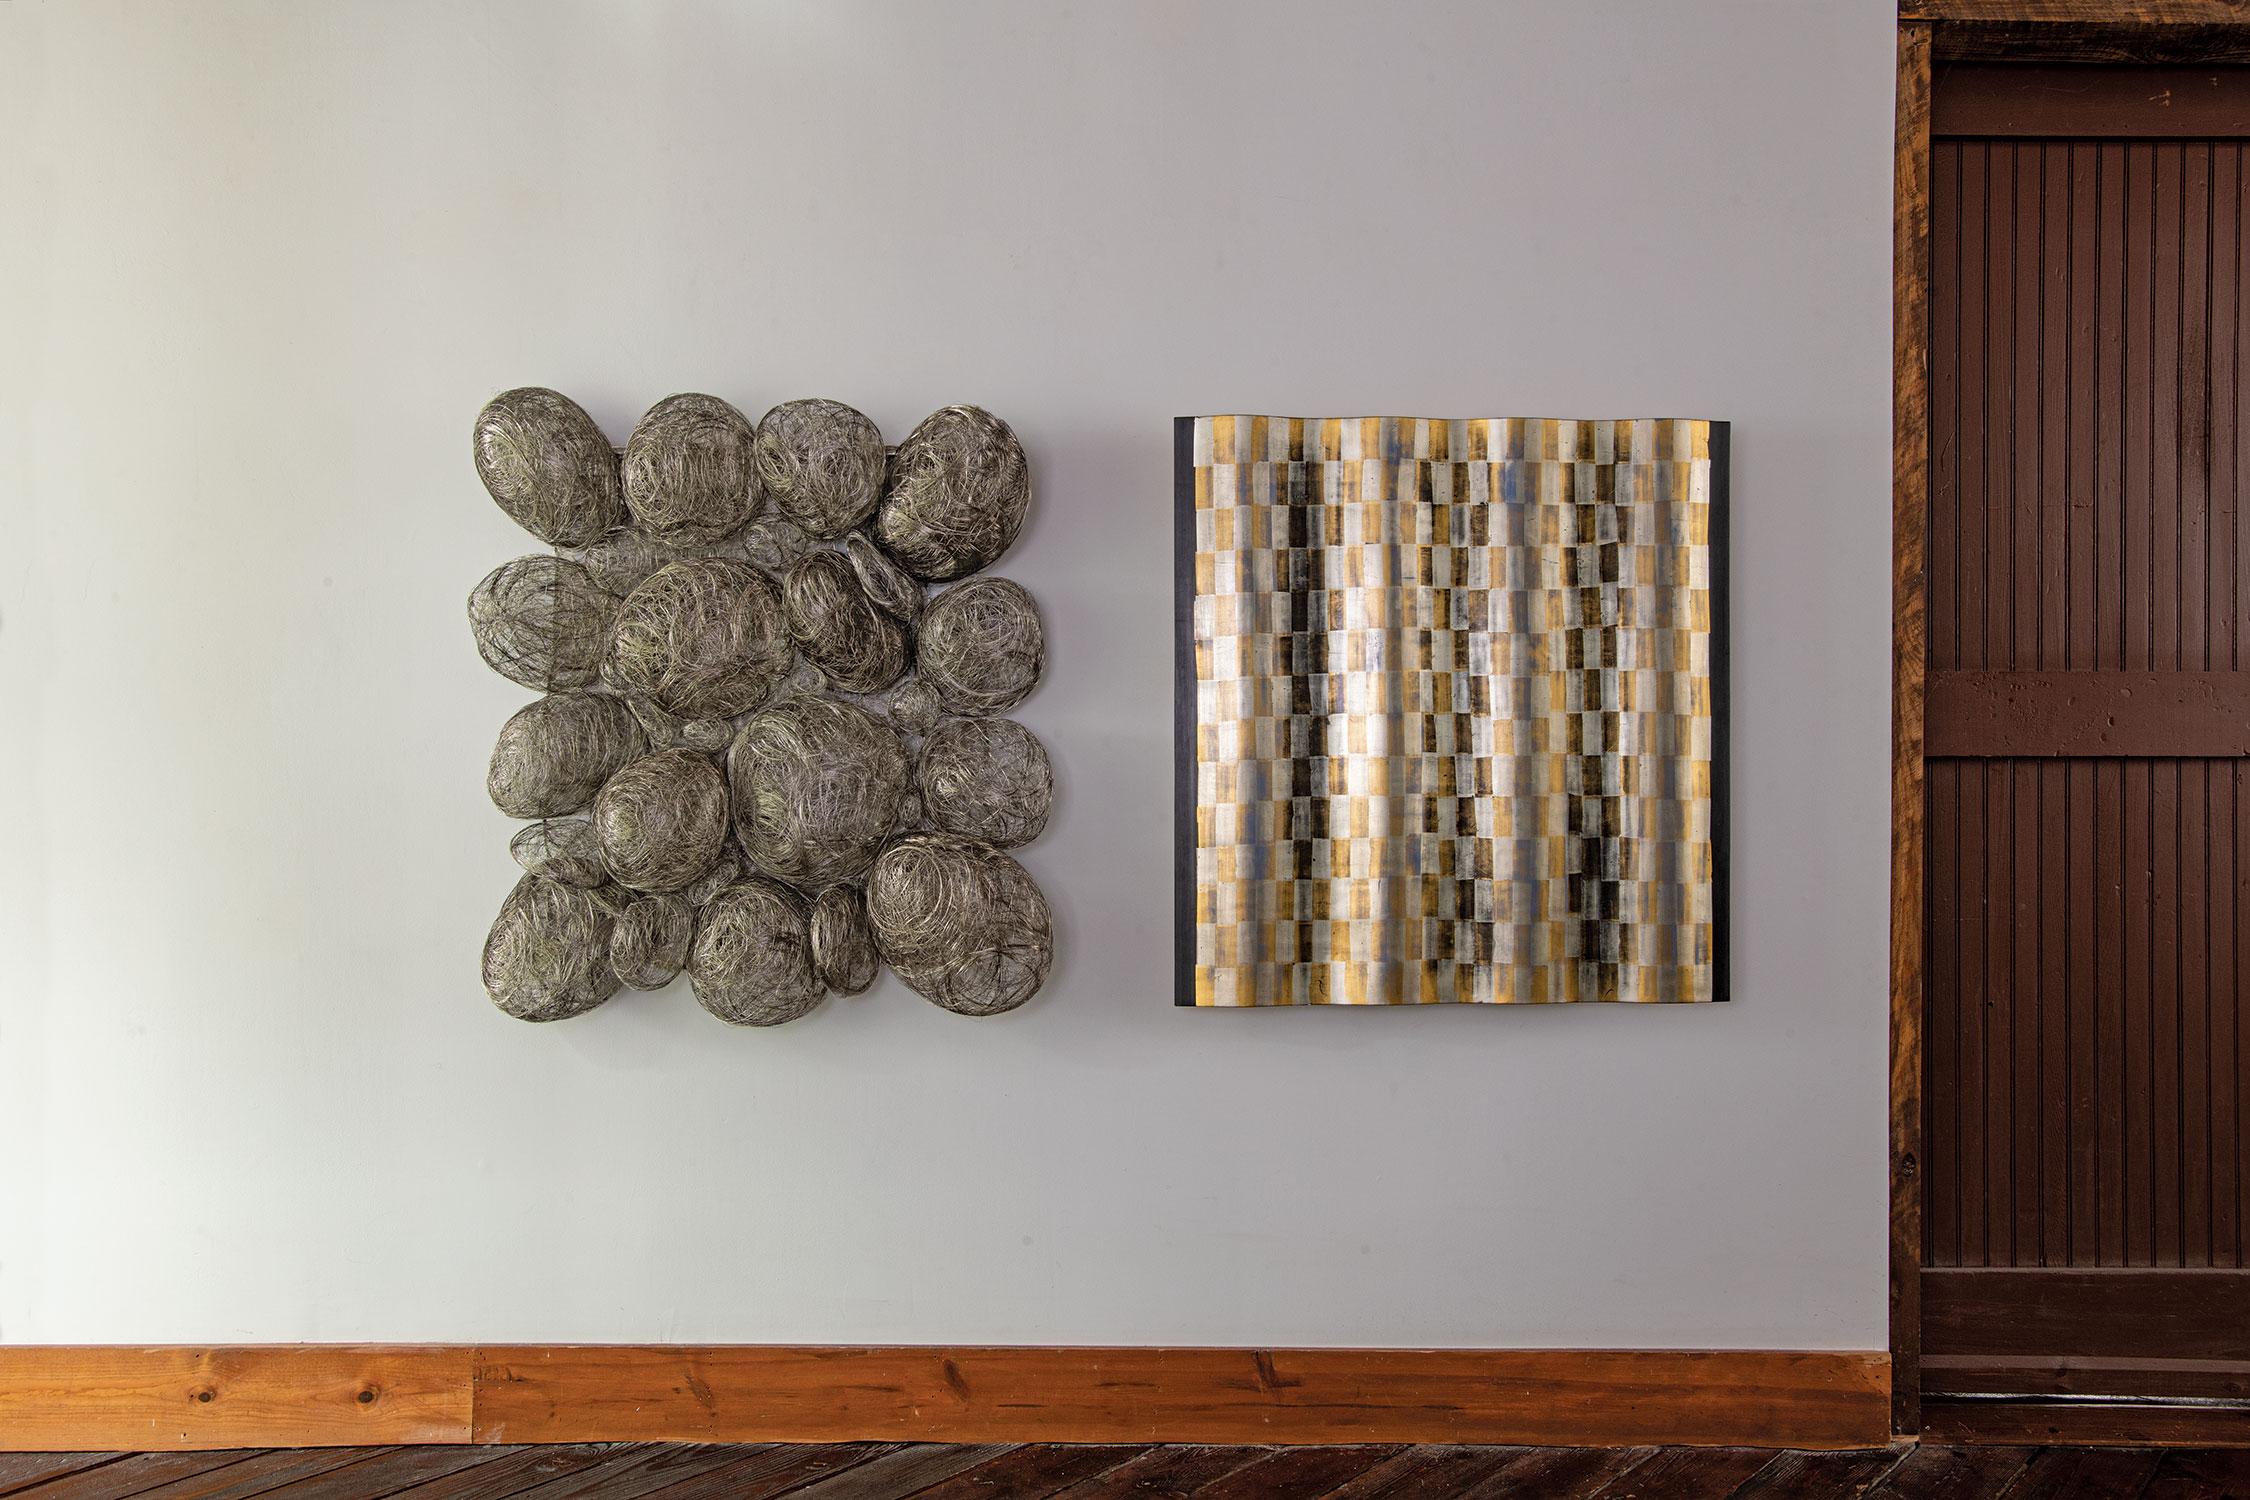 This steel thread woven wall sculpture was constructed by Japanese fiber artist, Kyoko Kumai.

